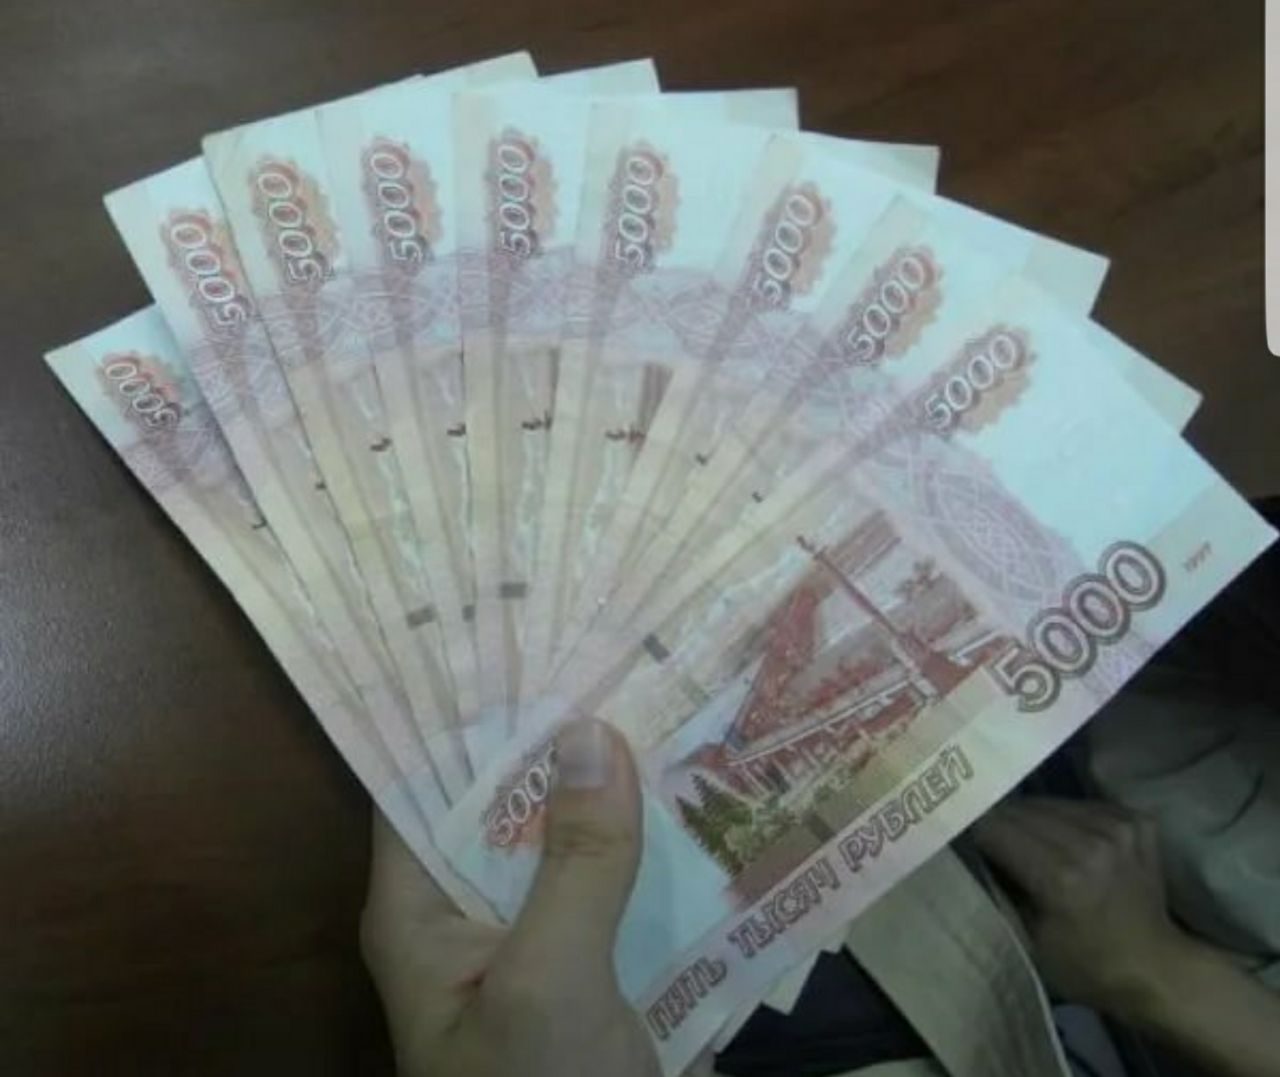 В 80 000 рублей в месяц